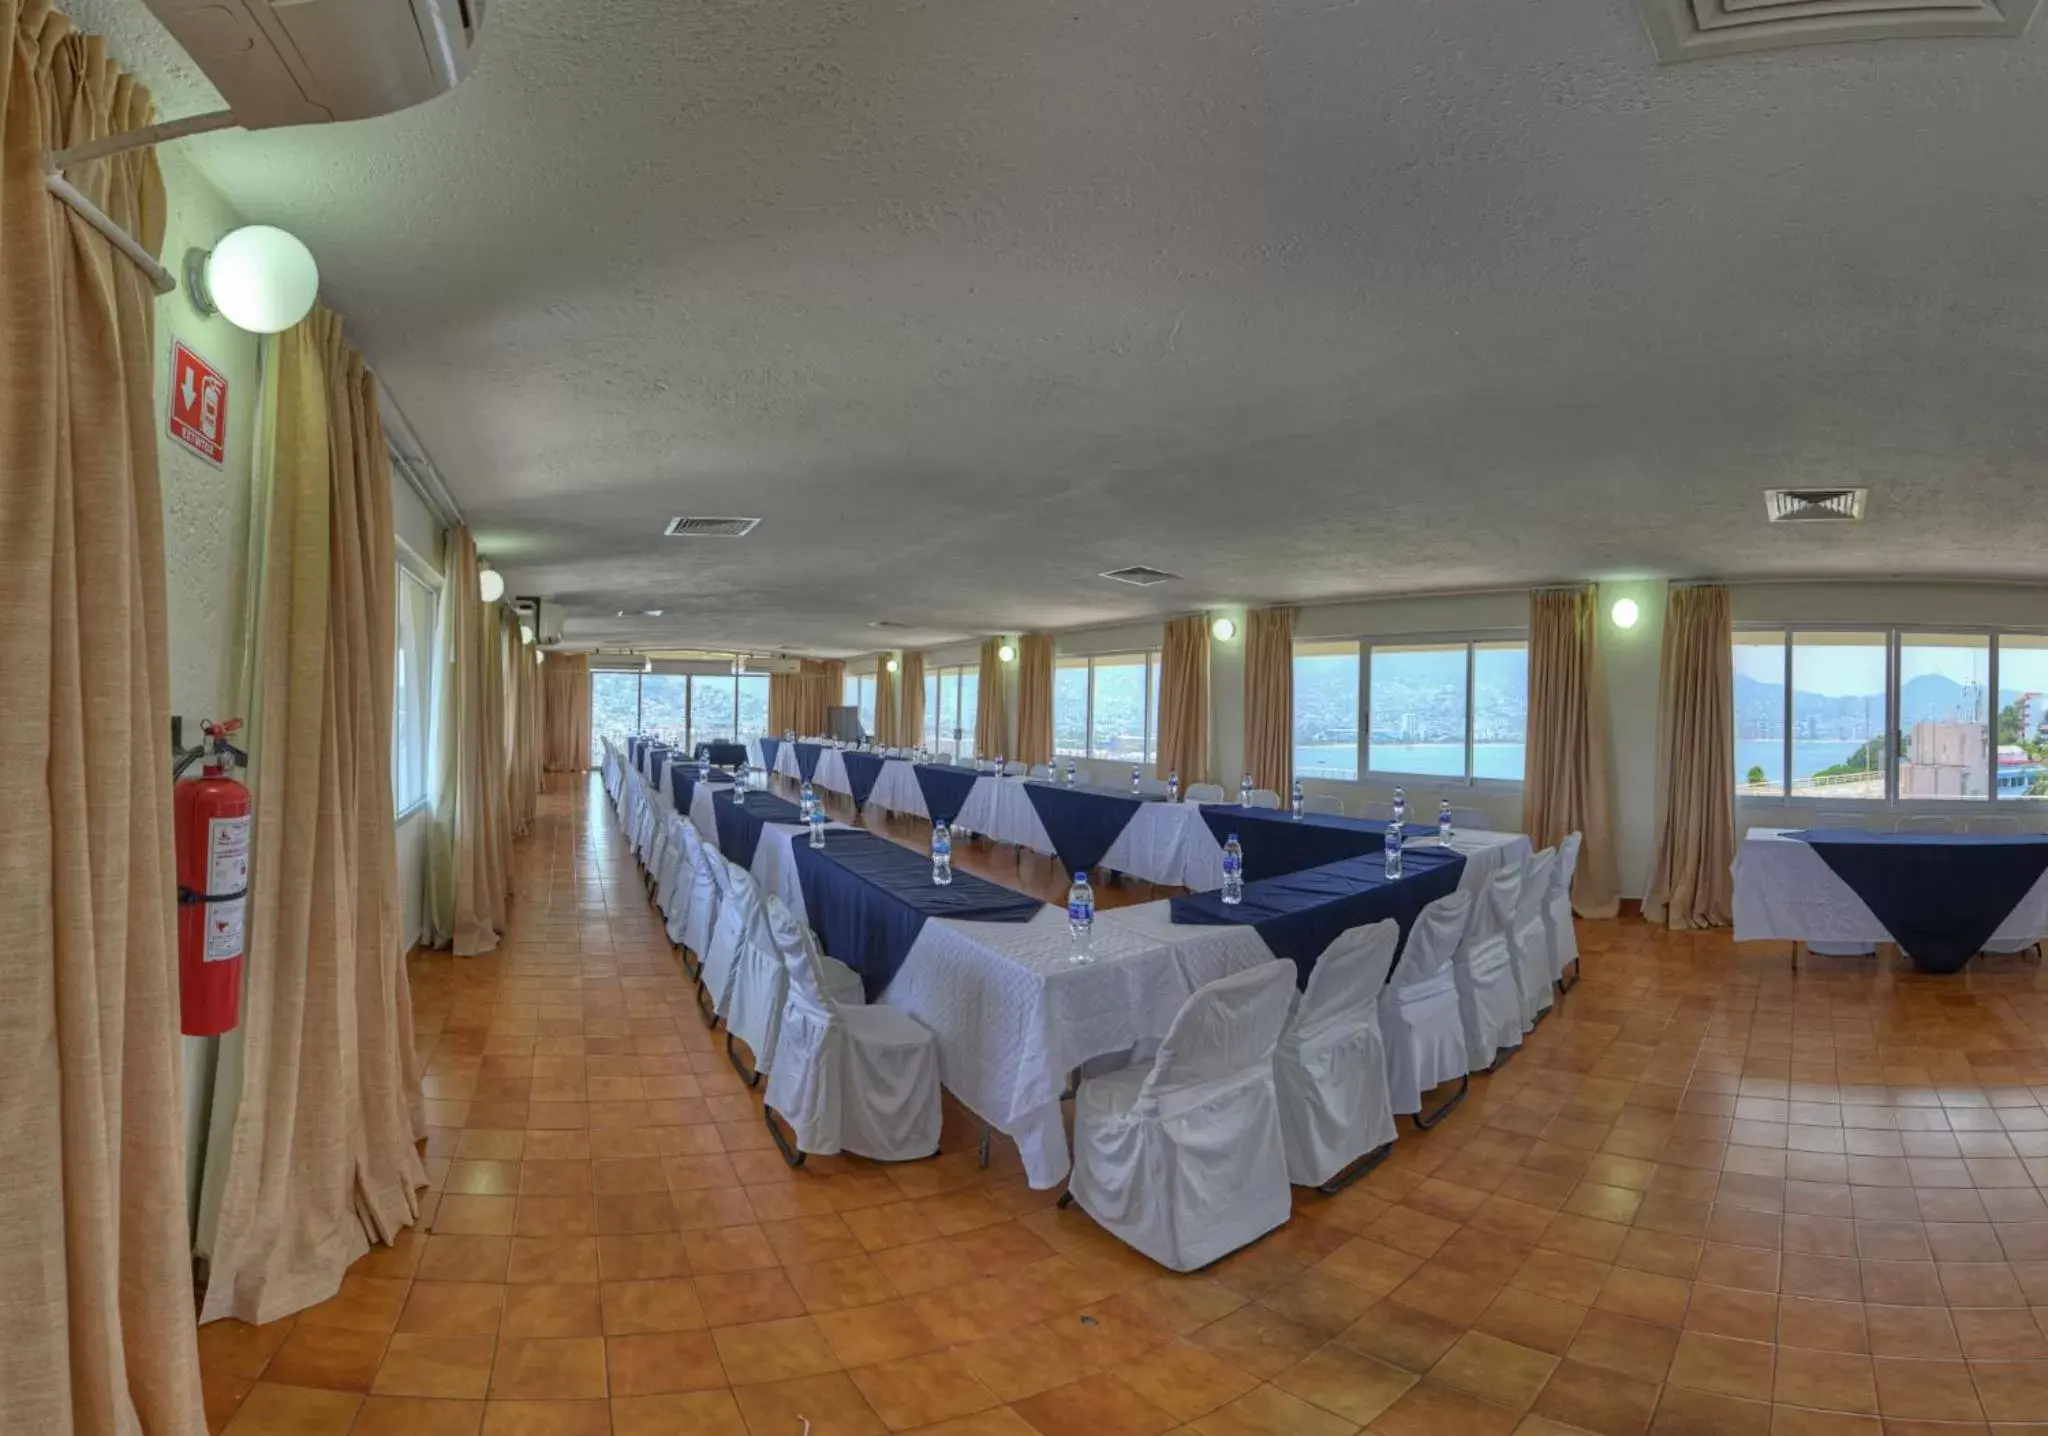 Business facilities, Banquet Facilities in Alba Suites Acapulco